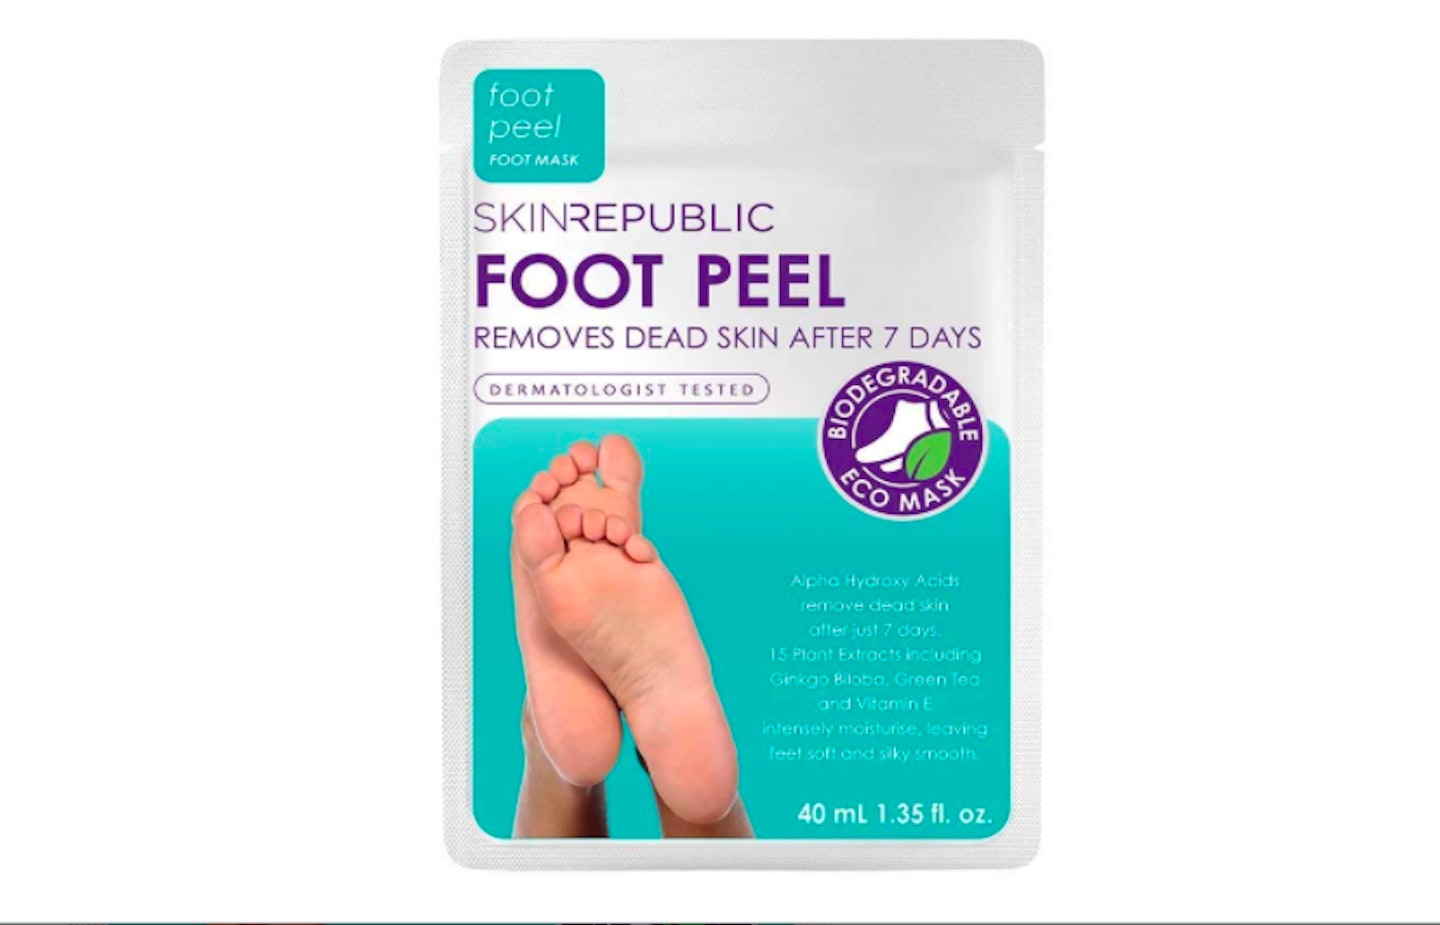 A foot peel